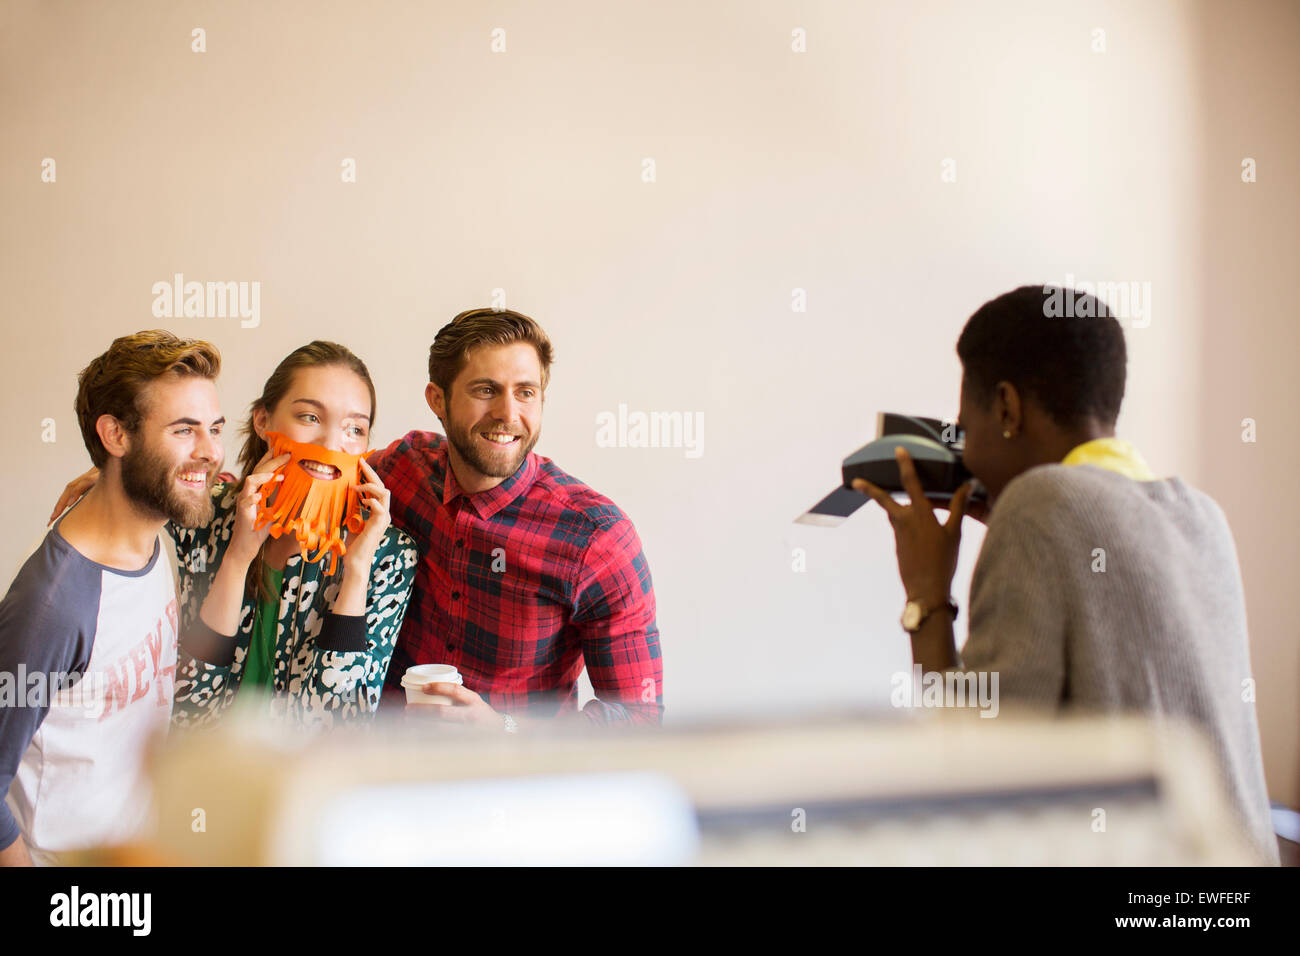 Kreative Geschäftsleute spielerisch posiert für Mitarbeiter mit Sofortbild-Kamera Stockfoto